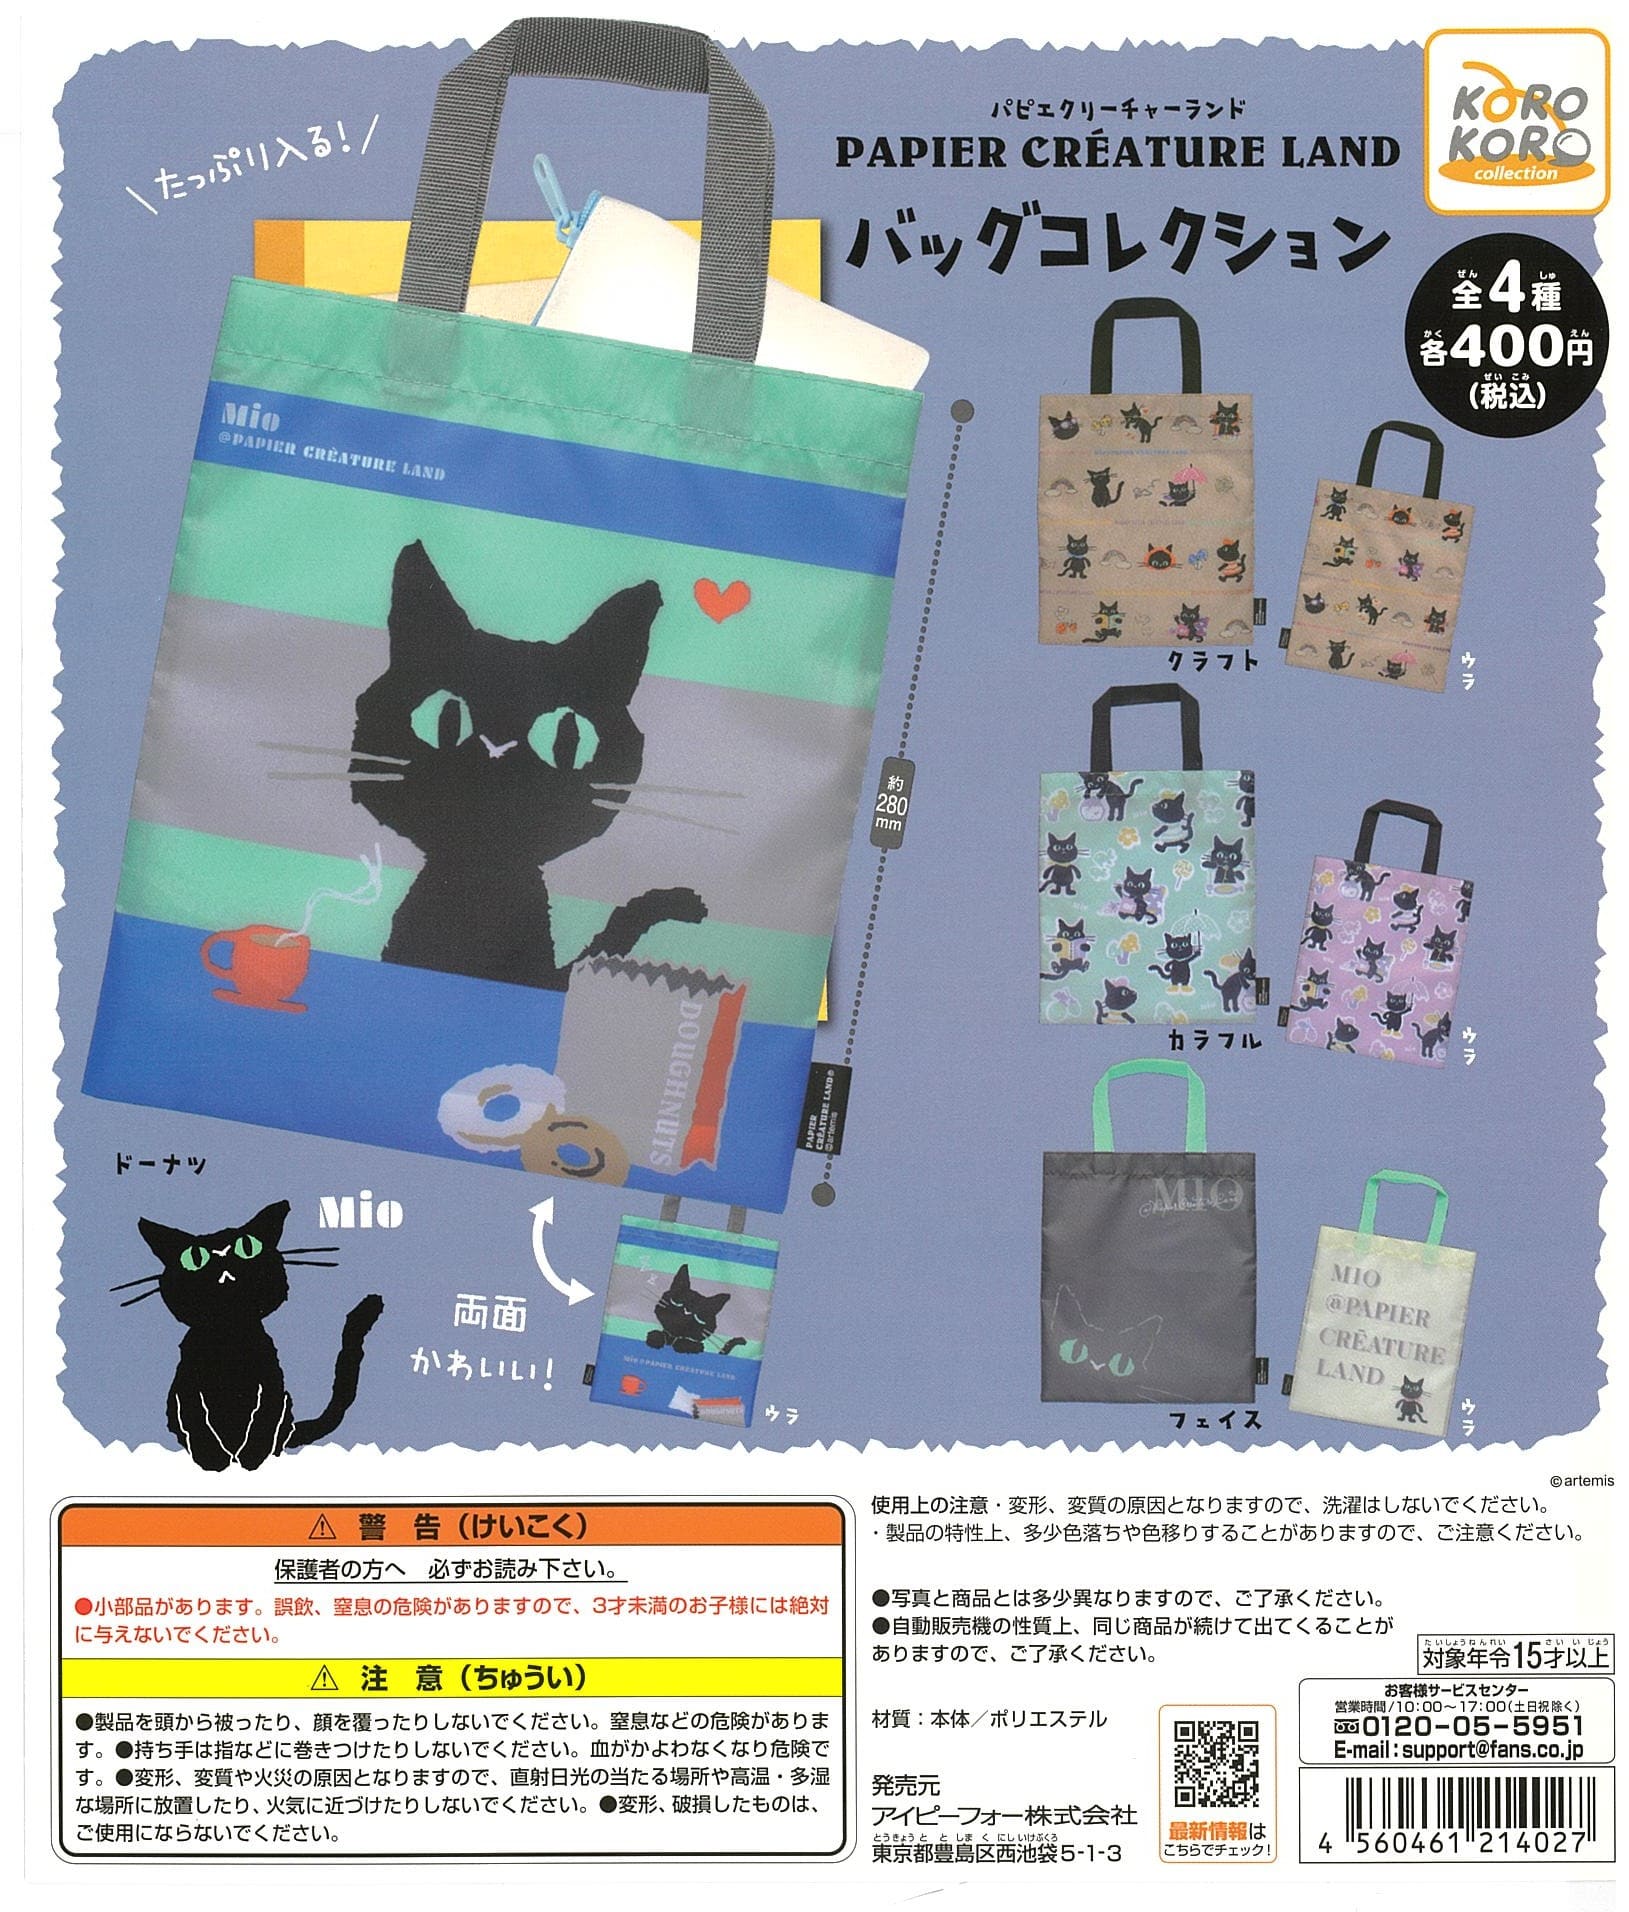 KoroKoro Collection CP2360 Papier Creature Land Bag Collection